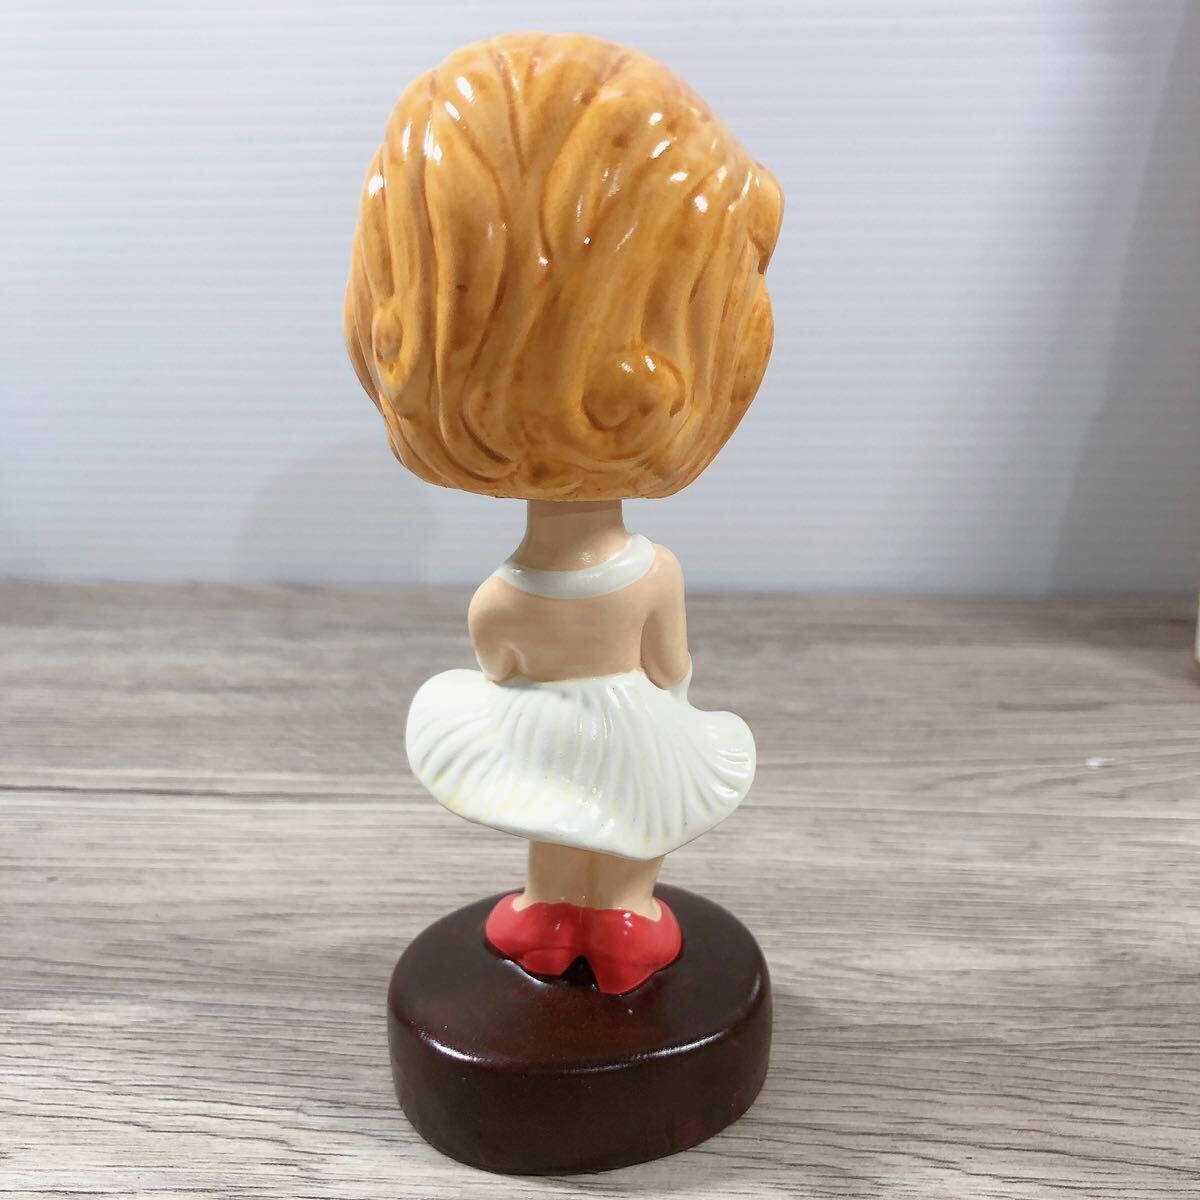  очень редкий Marilyn * Monroe товары продажа комплектом катушка g head колеблющийся кукла кружка керамика Mini жестяная банка сумма ввод постер коллекция 